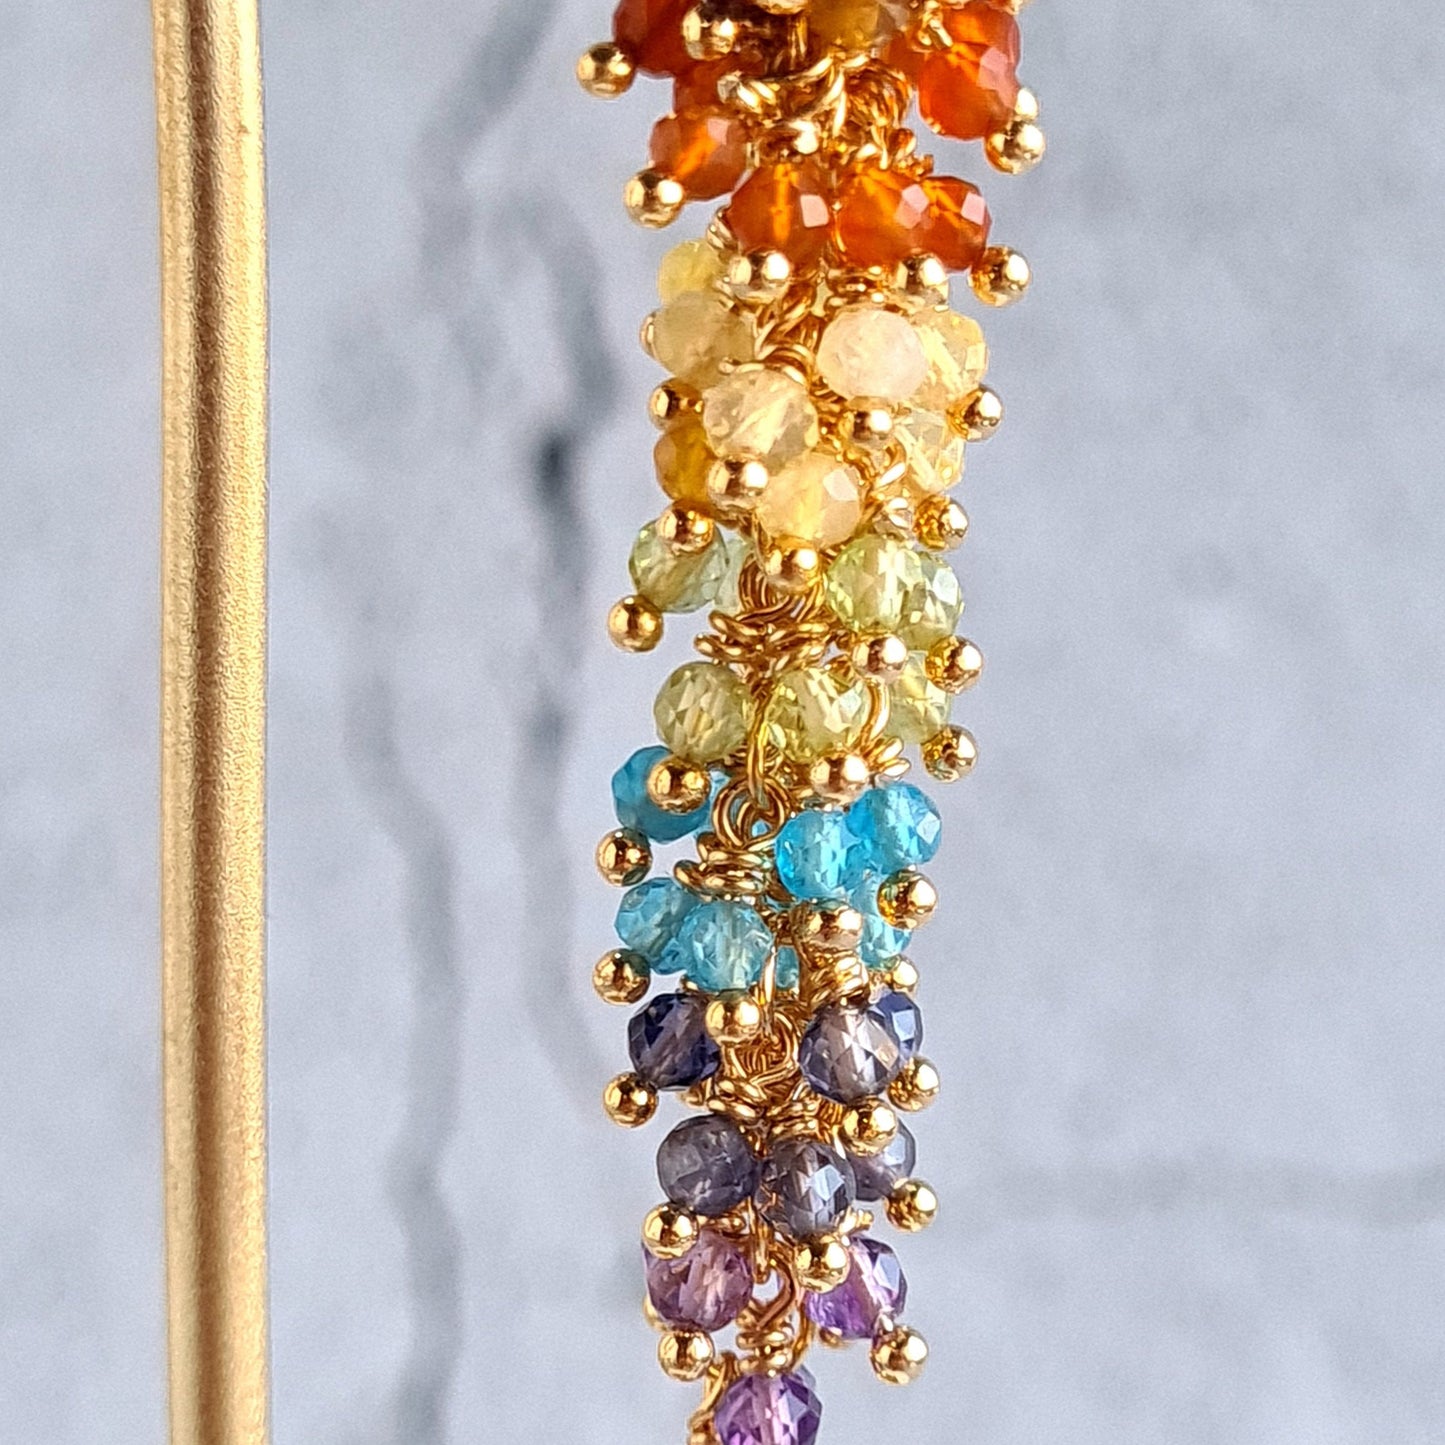 Rainbow Gemstone Cluster Earrings